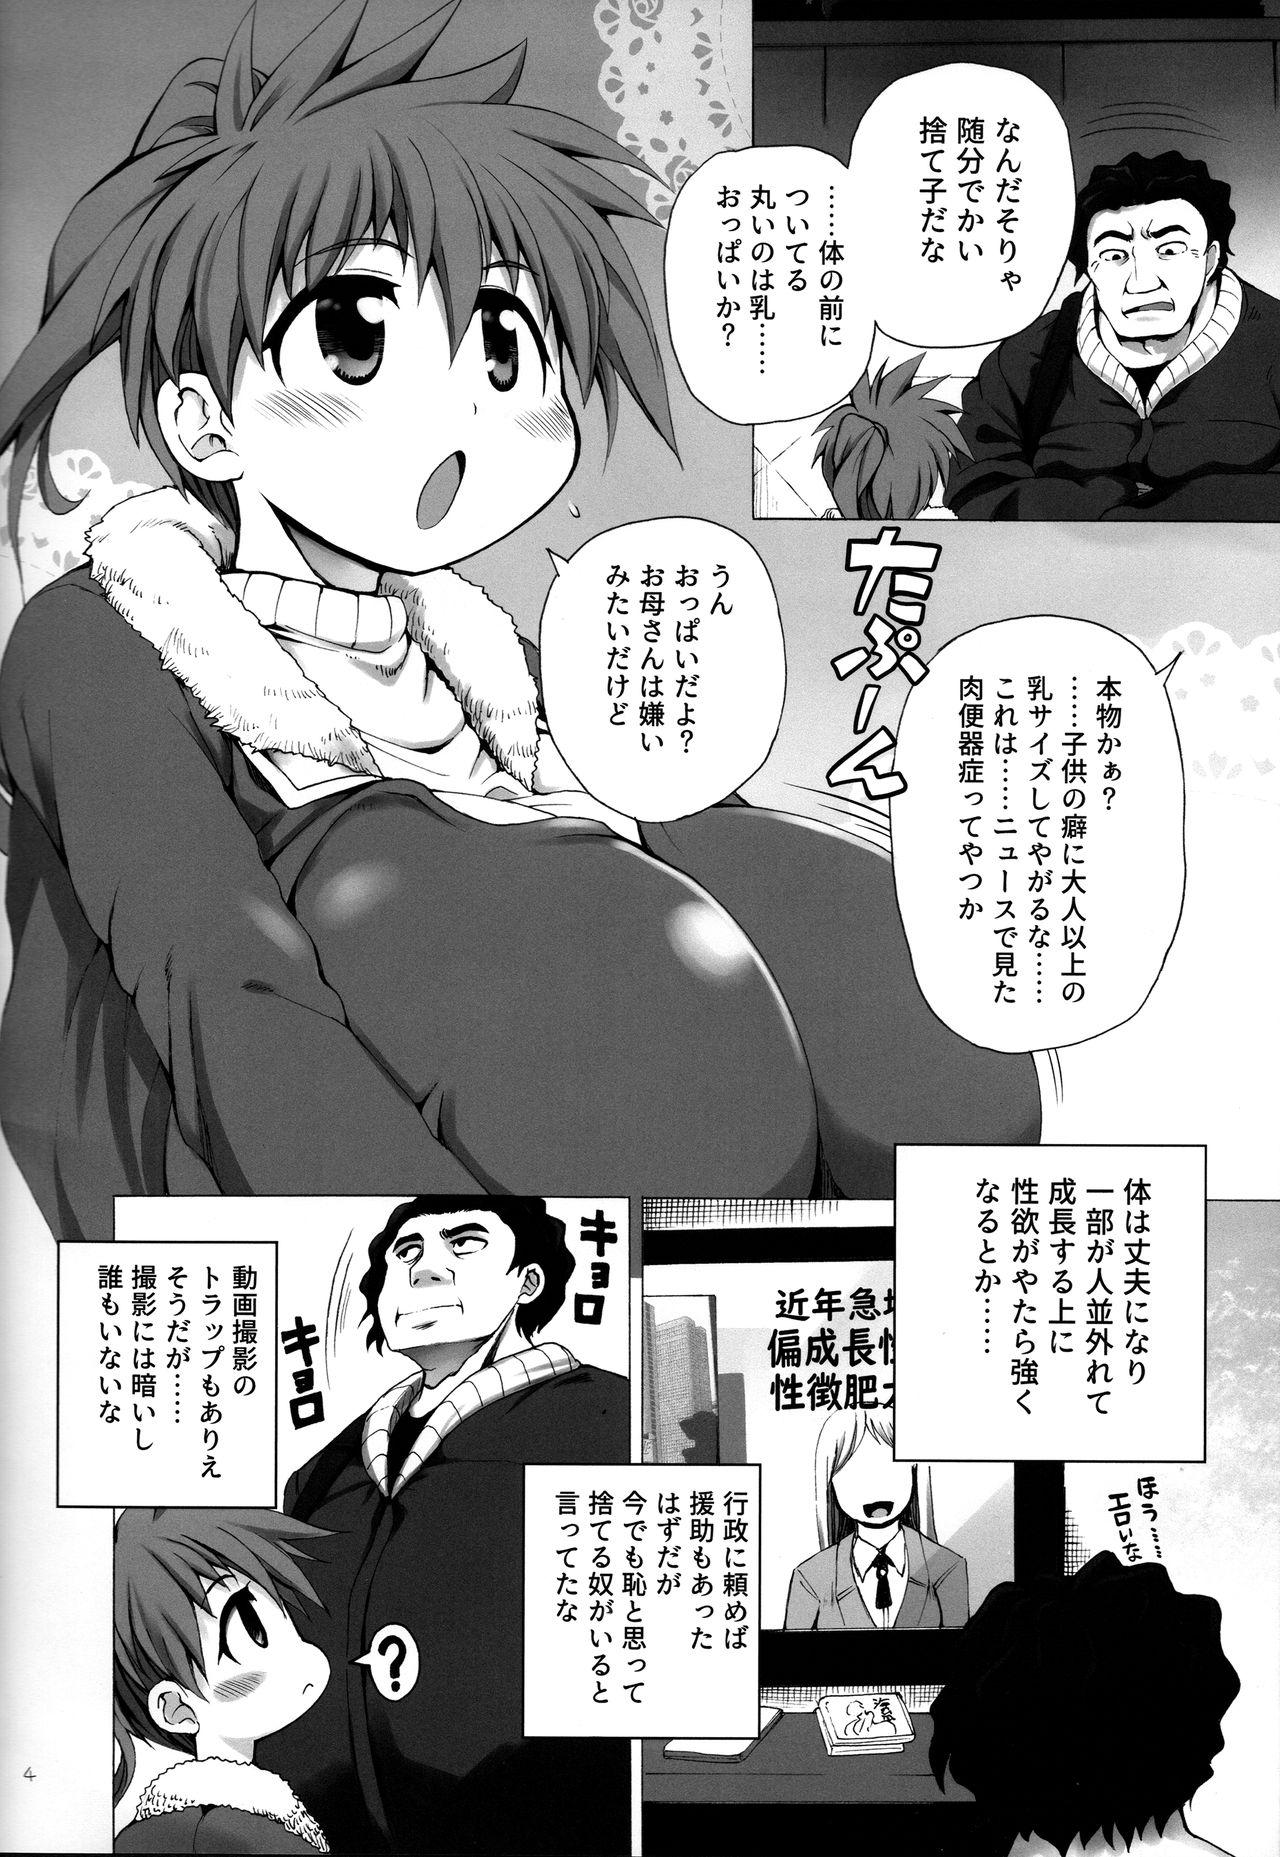 Ladyboy Hiroimono ni wa Fuku ga nai - Original Rub - Page 4